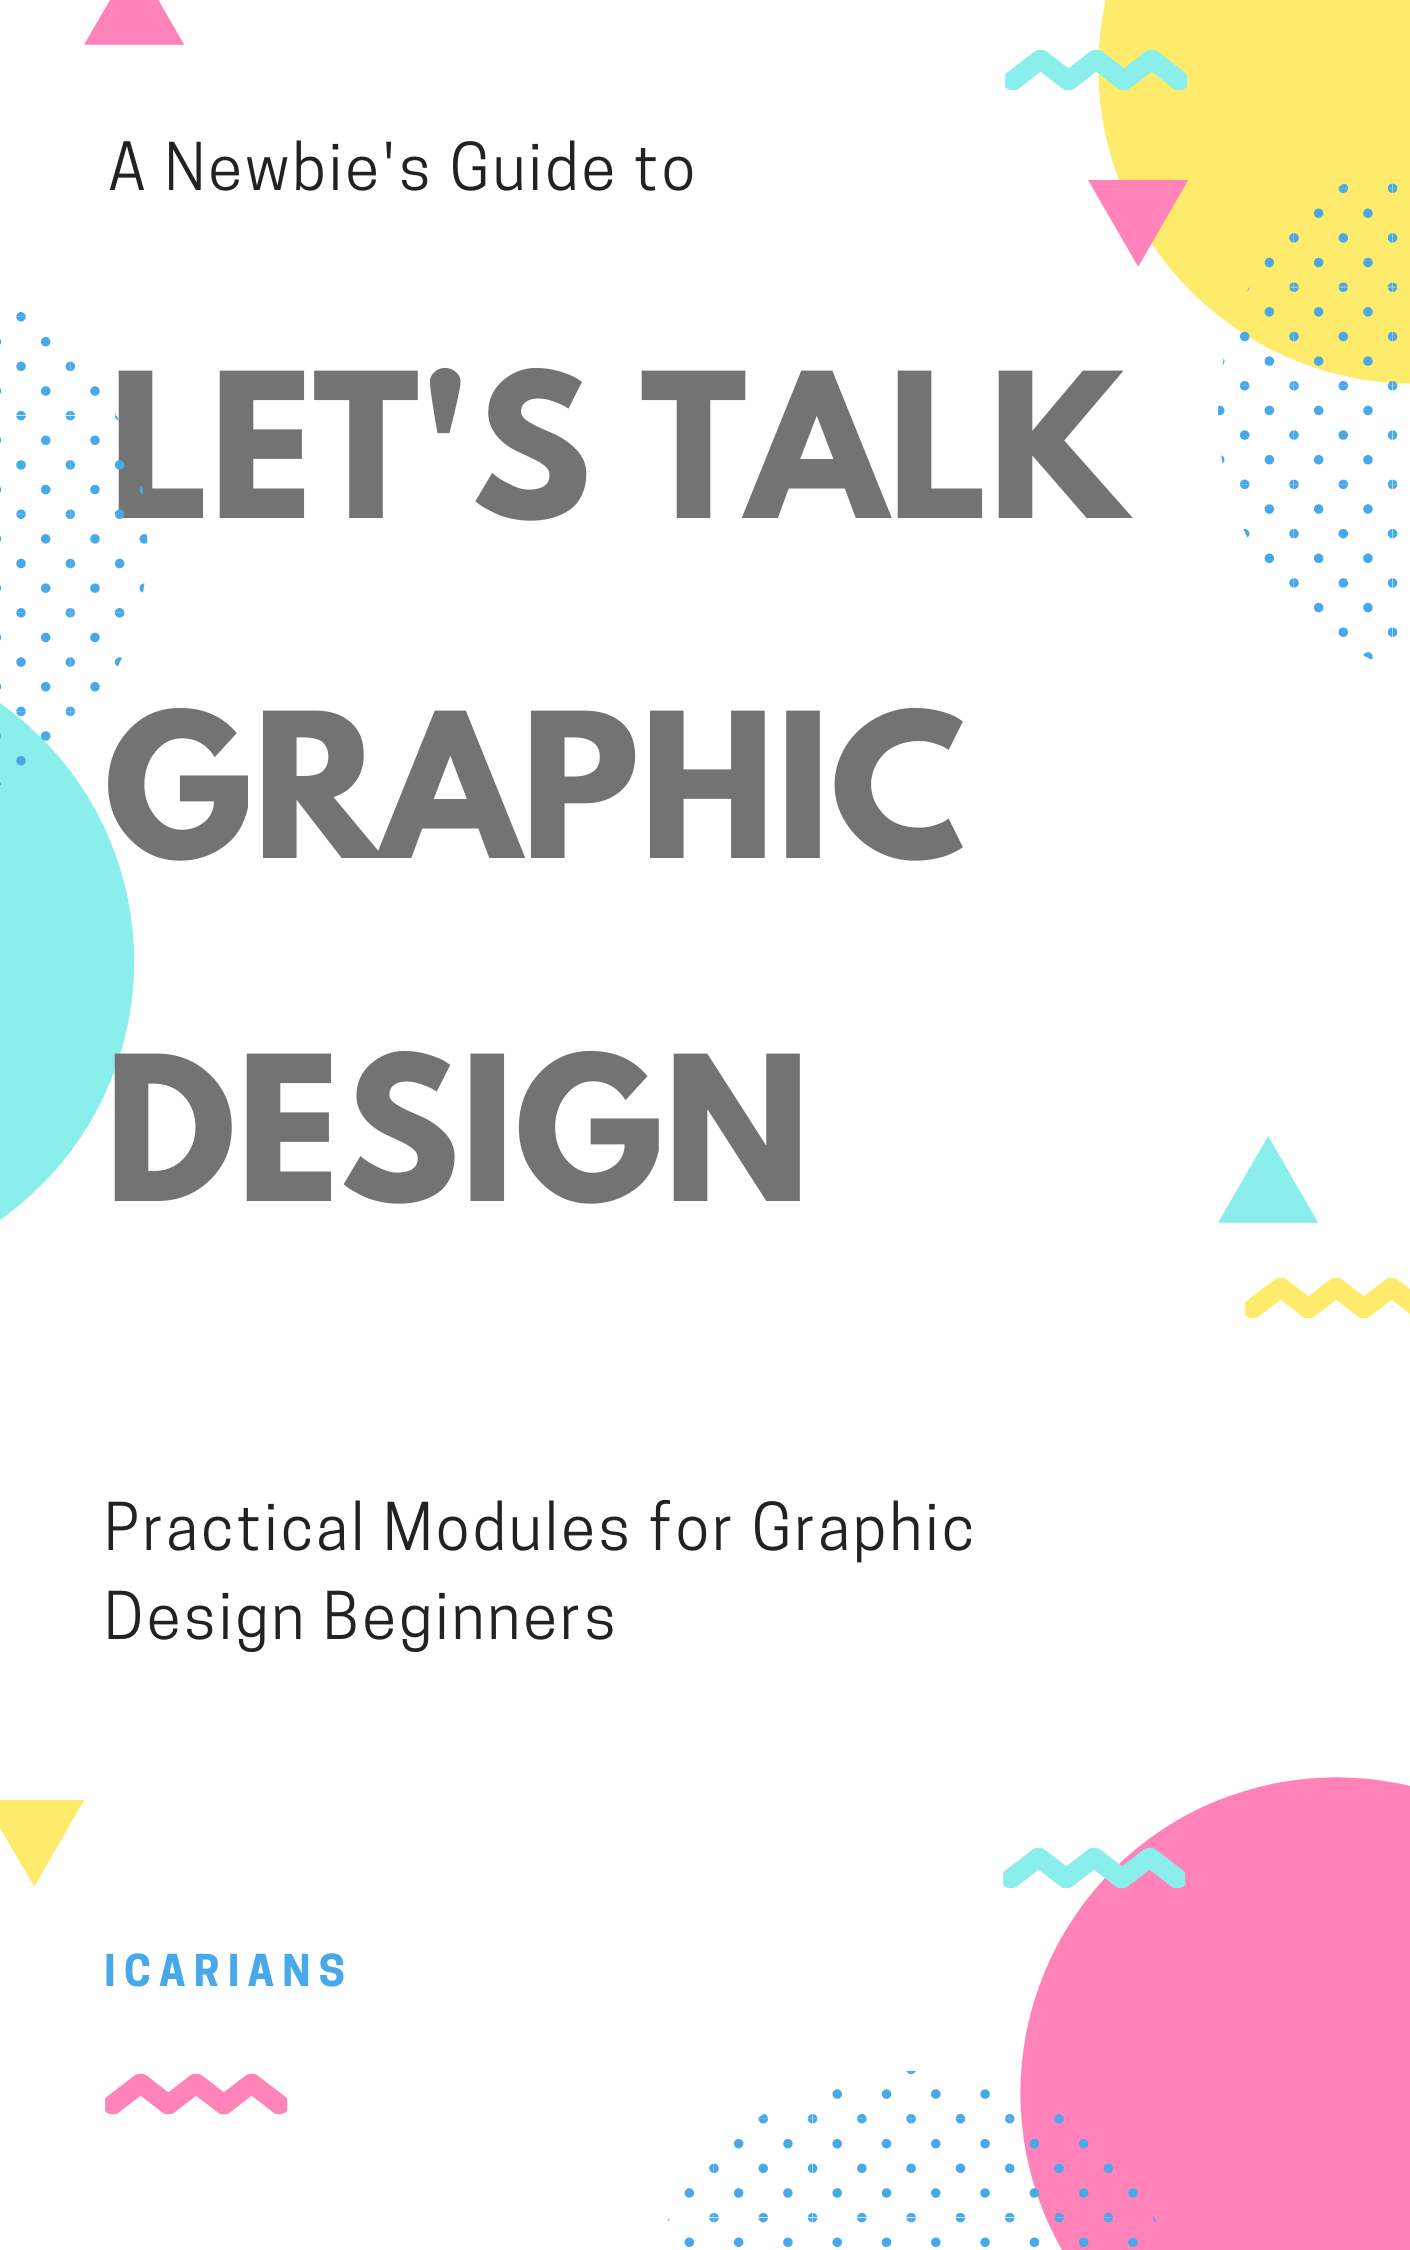 Graphic Designing Course